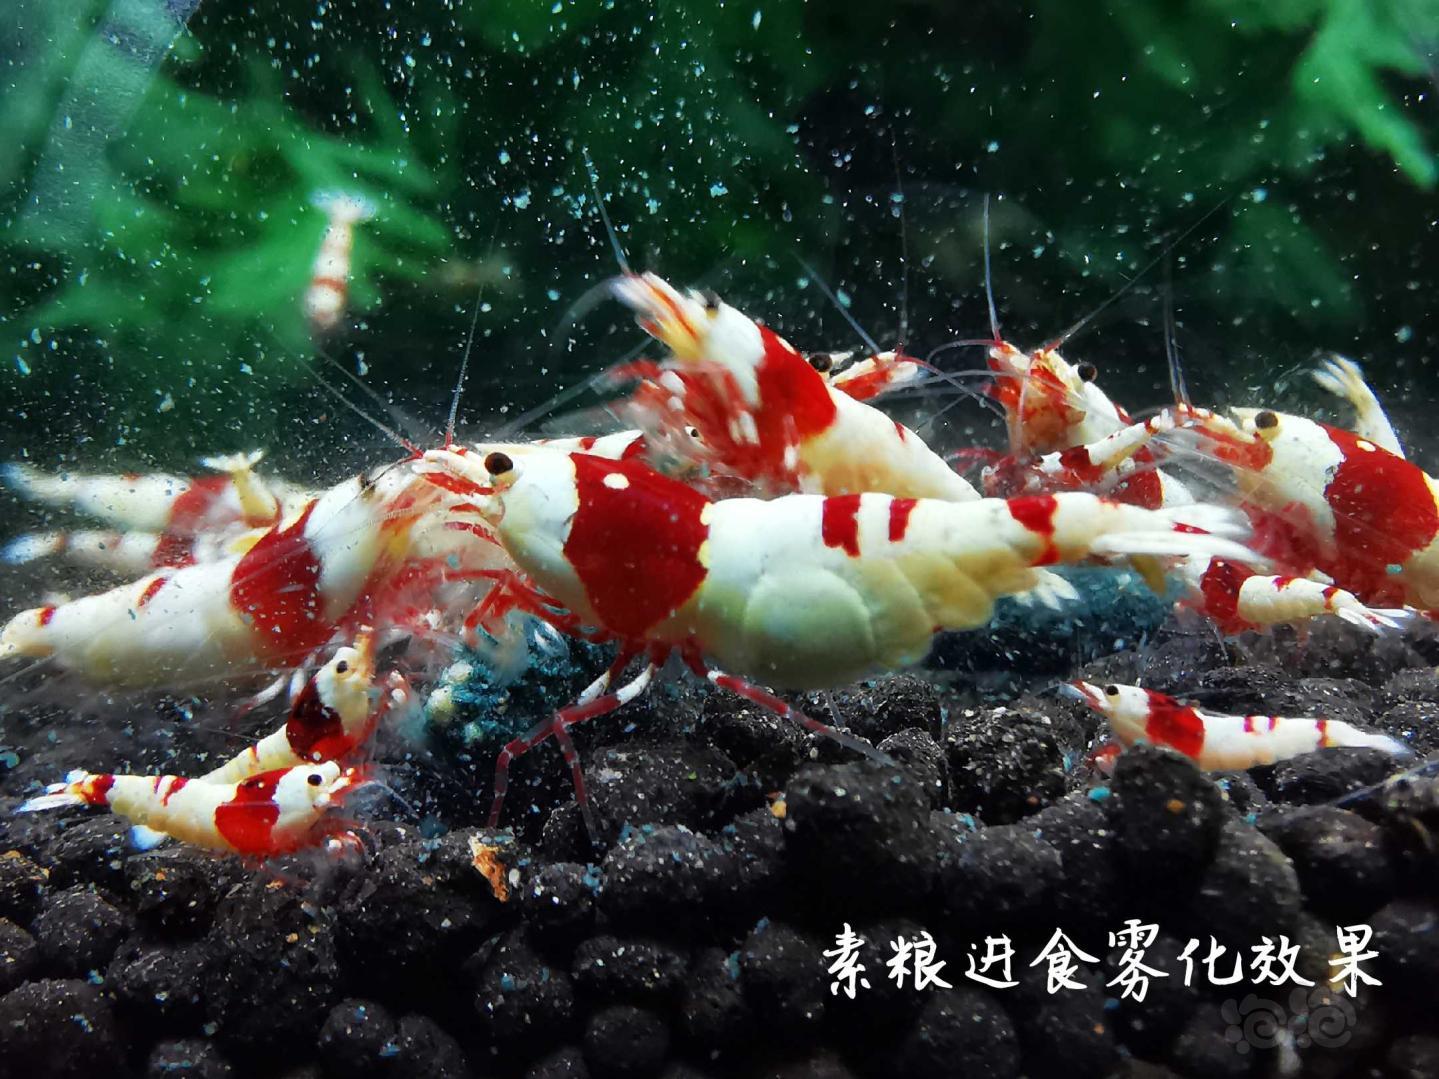 【虾】2020-3-29#RMB拍卖瑾福水晶虾粮套装一套-图6